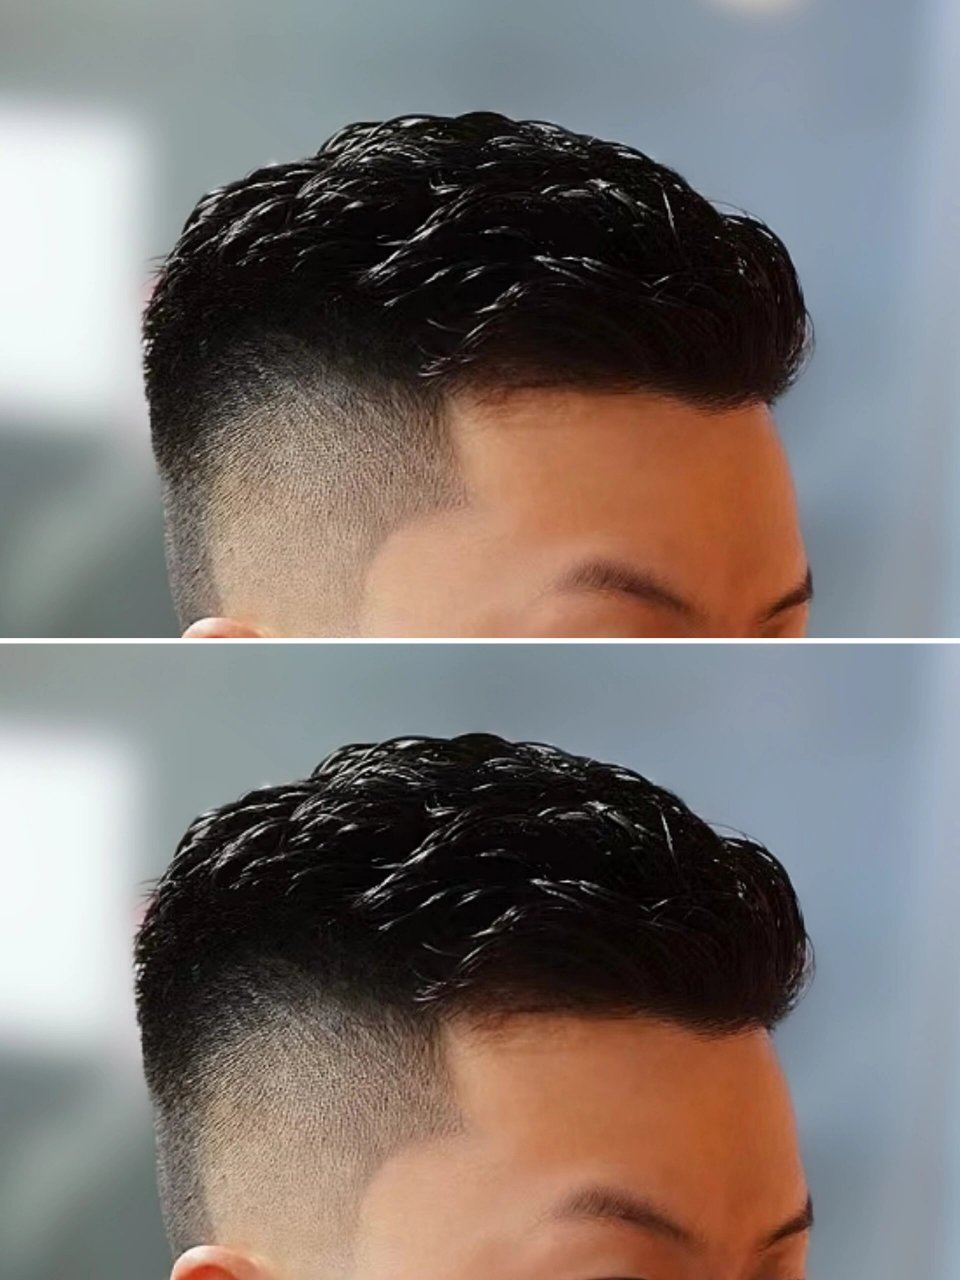 港风发型是最适合亚洲人发质的发型,长度5厘米左右,对发质无要求